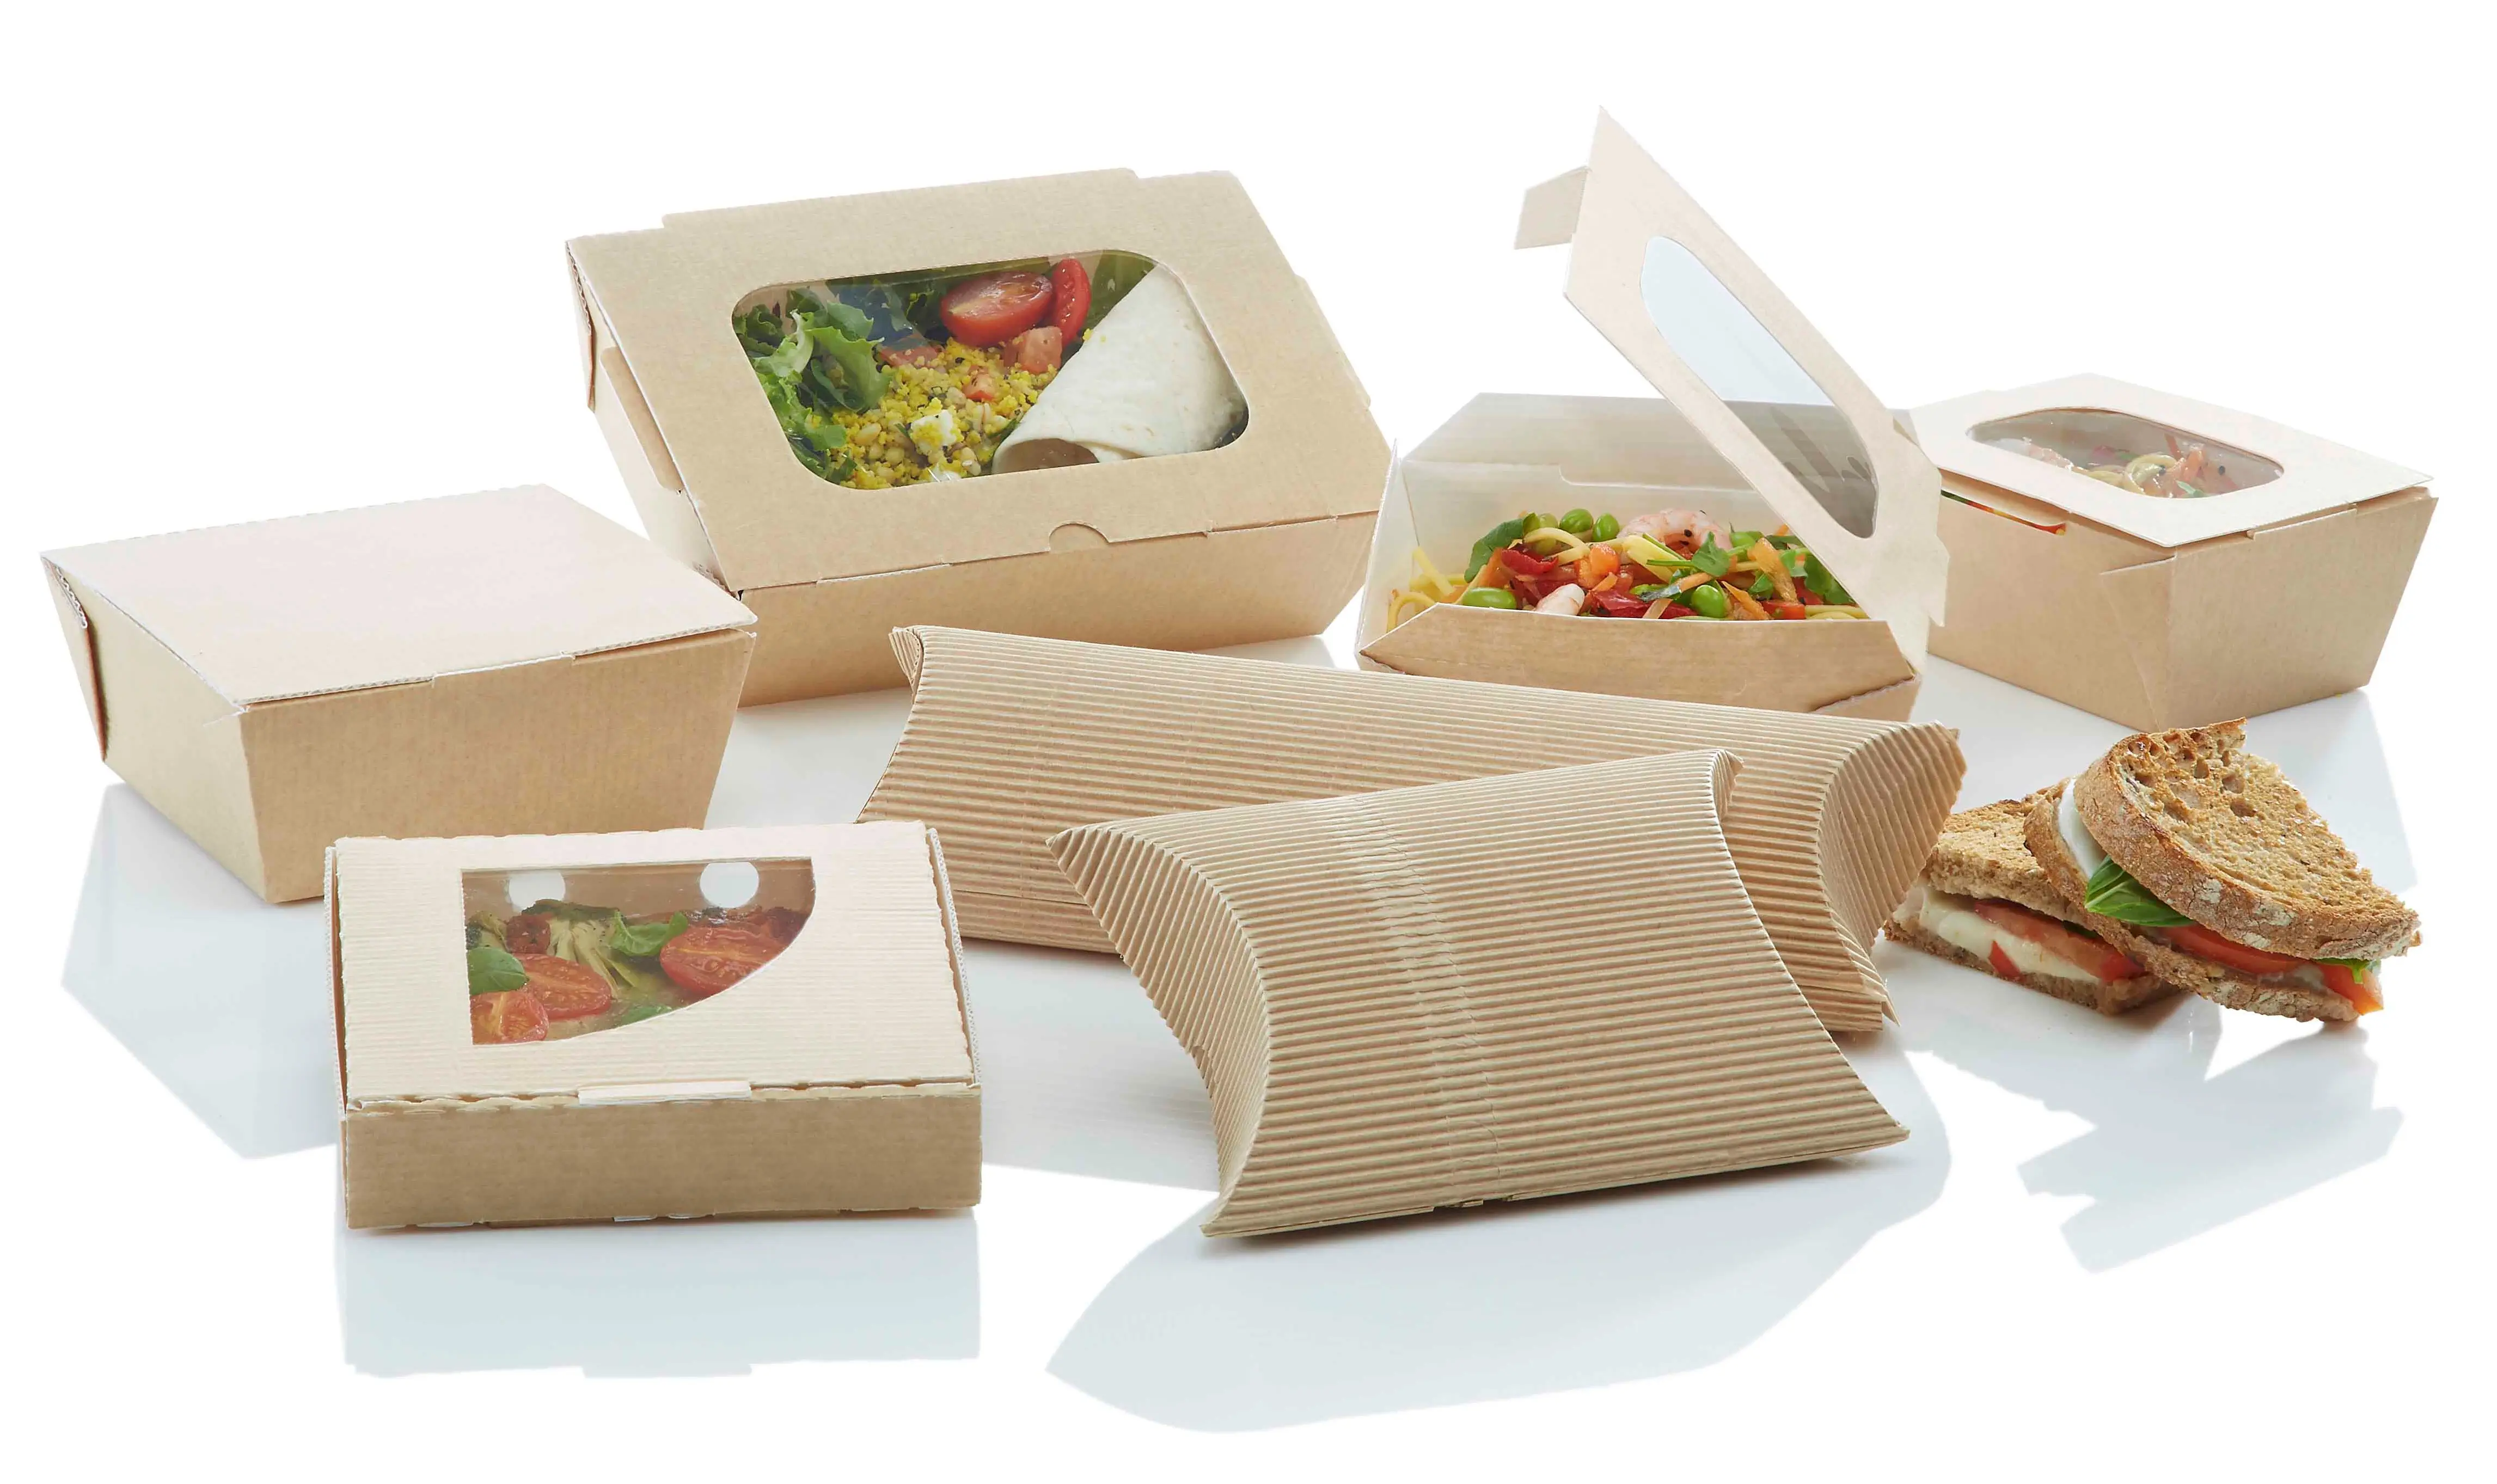 Упаковка готового продукта. Эко упаковка для пищевых продуктов. Бумажная упаковка для еды. Упаковка для фаст фуда. Еда в упаковке.